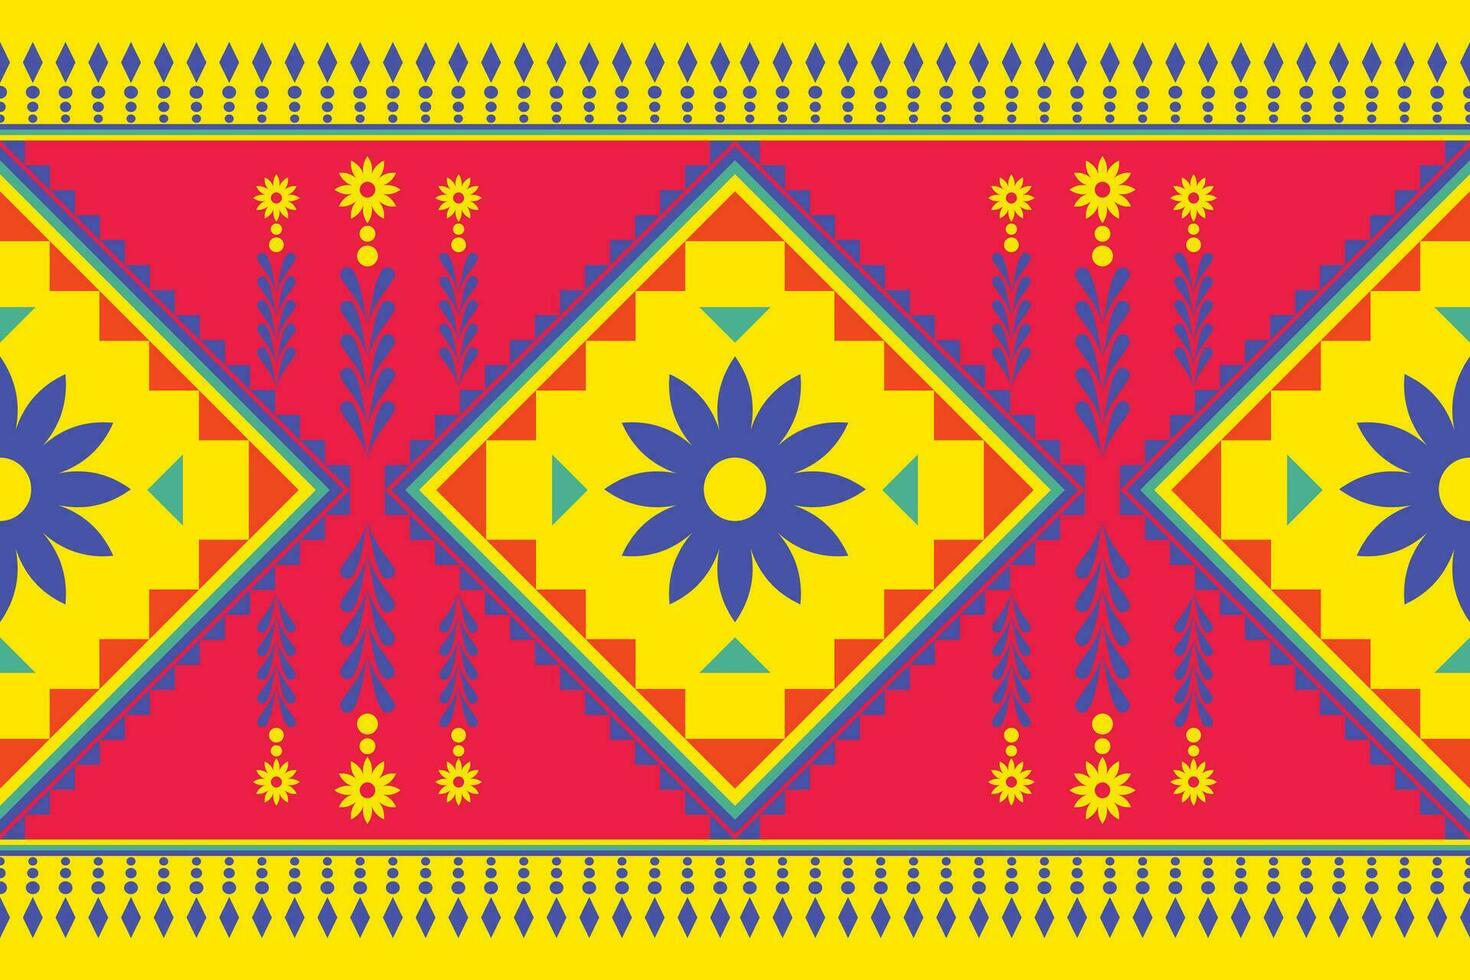 meetkundig etnisch patroon traditioneel ontwerp voor achtergrond, tapijt, behang, kleding, inpakken, batik, kleding stof, vector illustratie borduurwerk stijl.